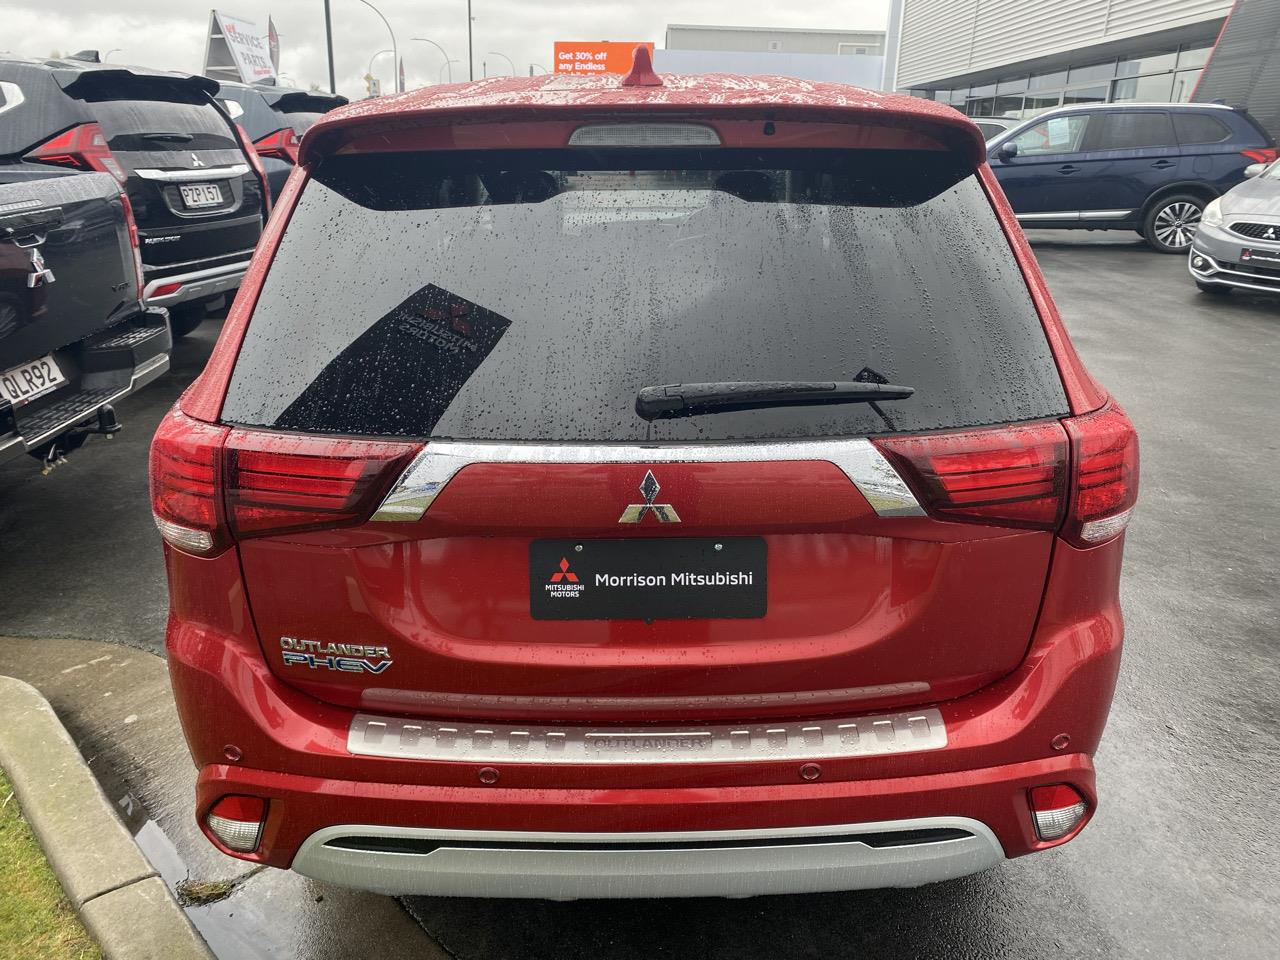 2019 Mitsubishi Outlander